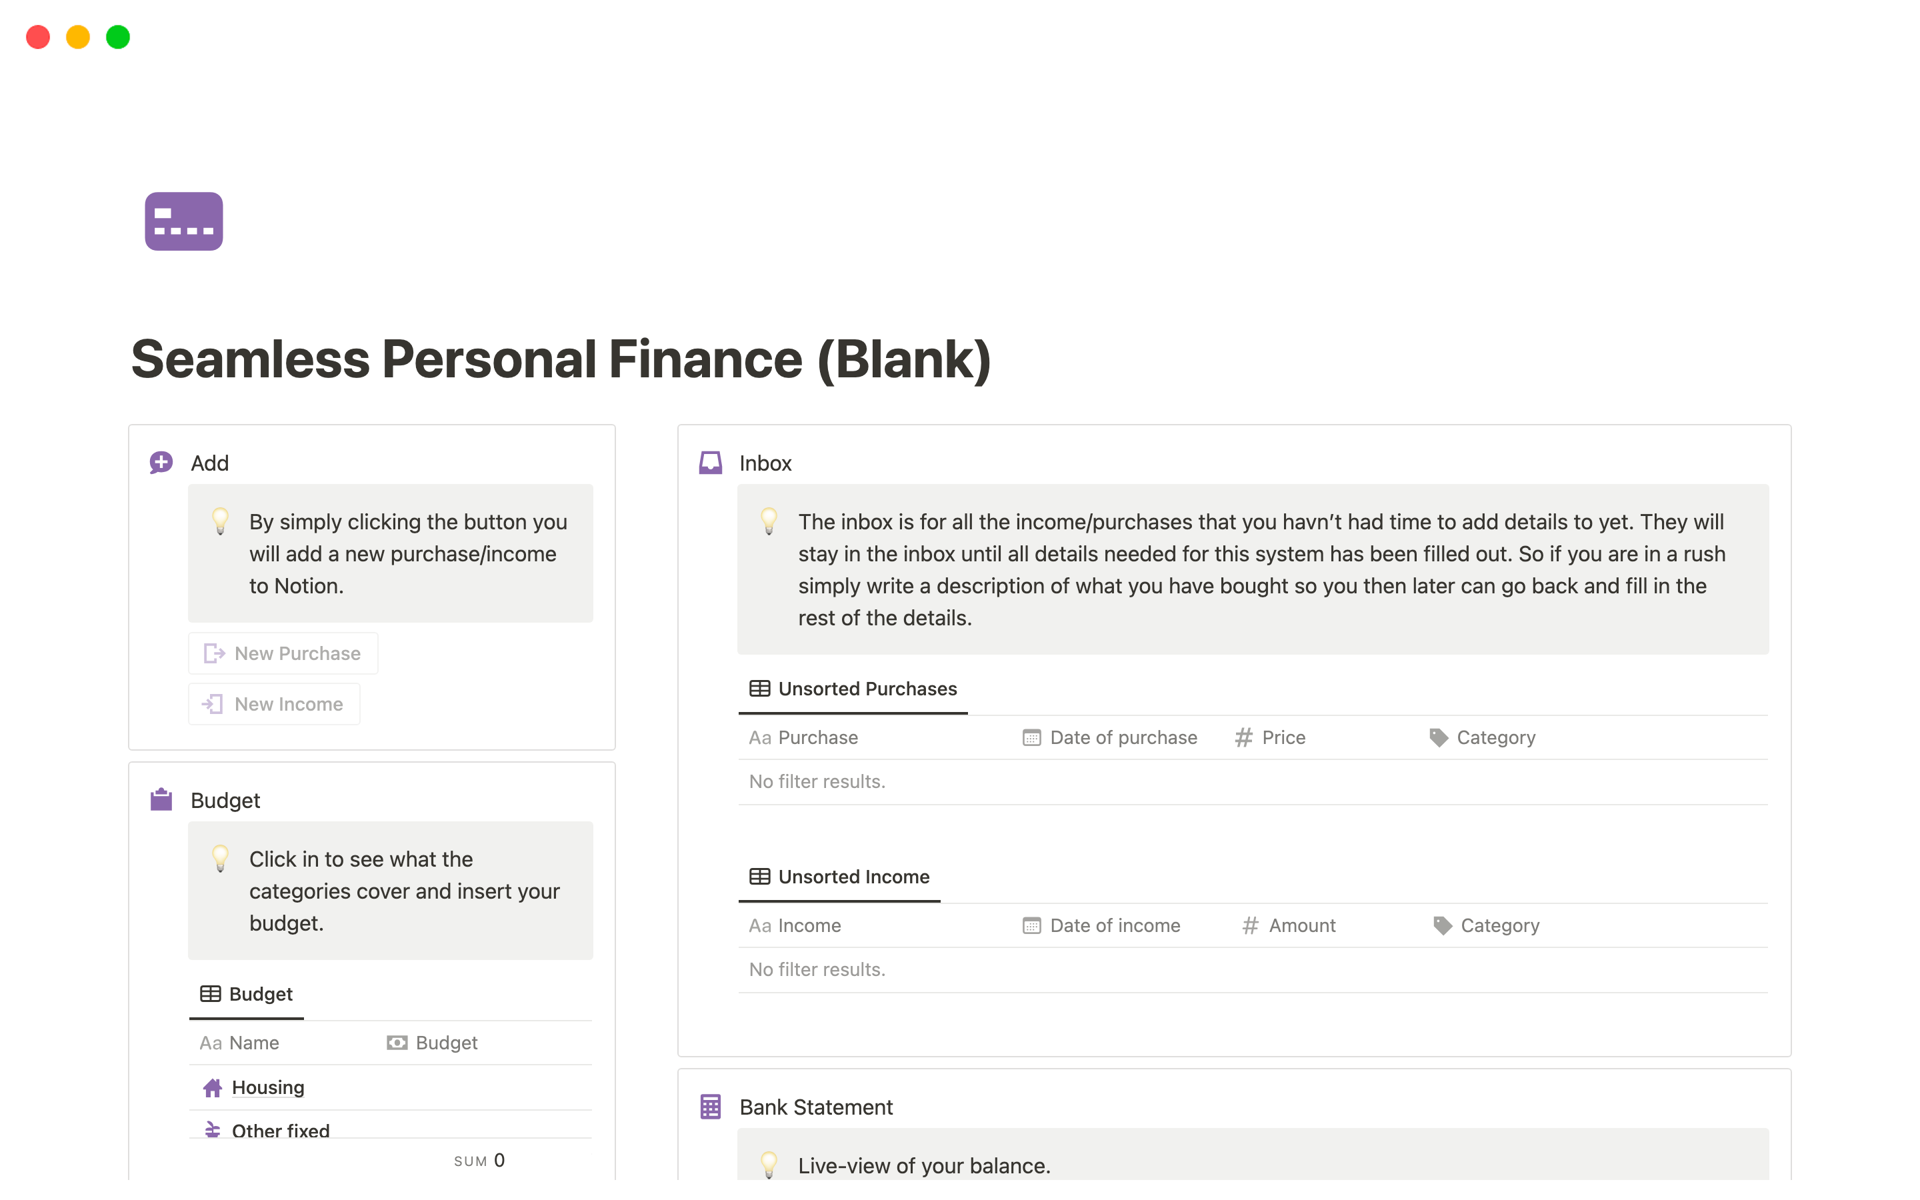 Uma prévia do modelo para Seamless Personal Finance